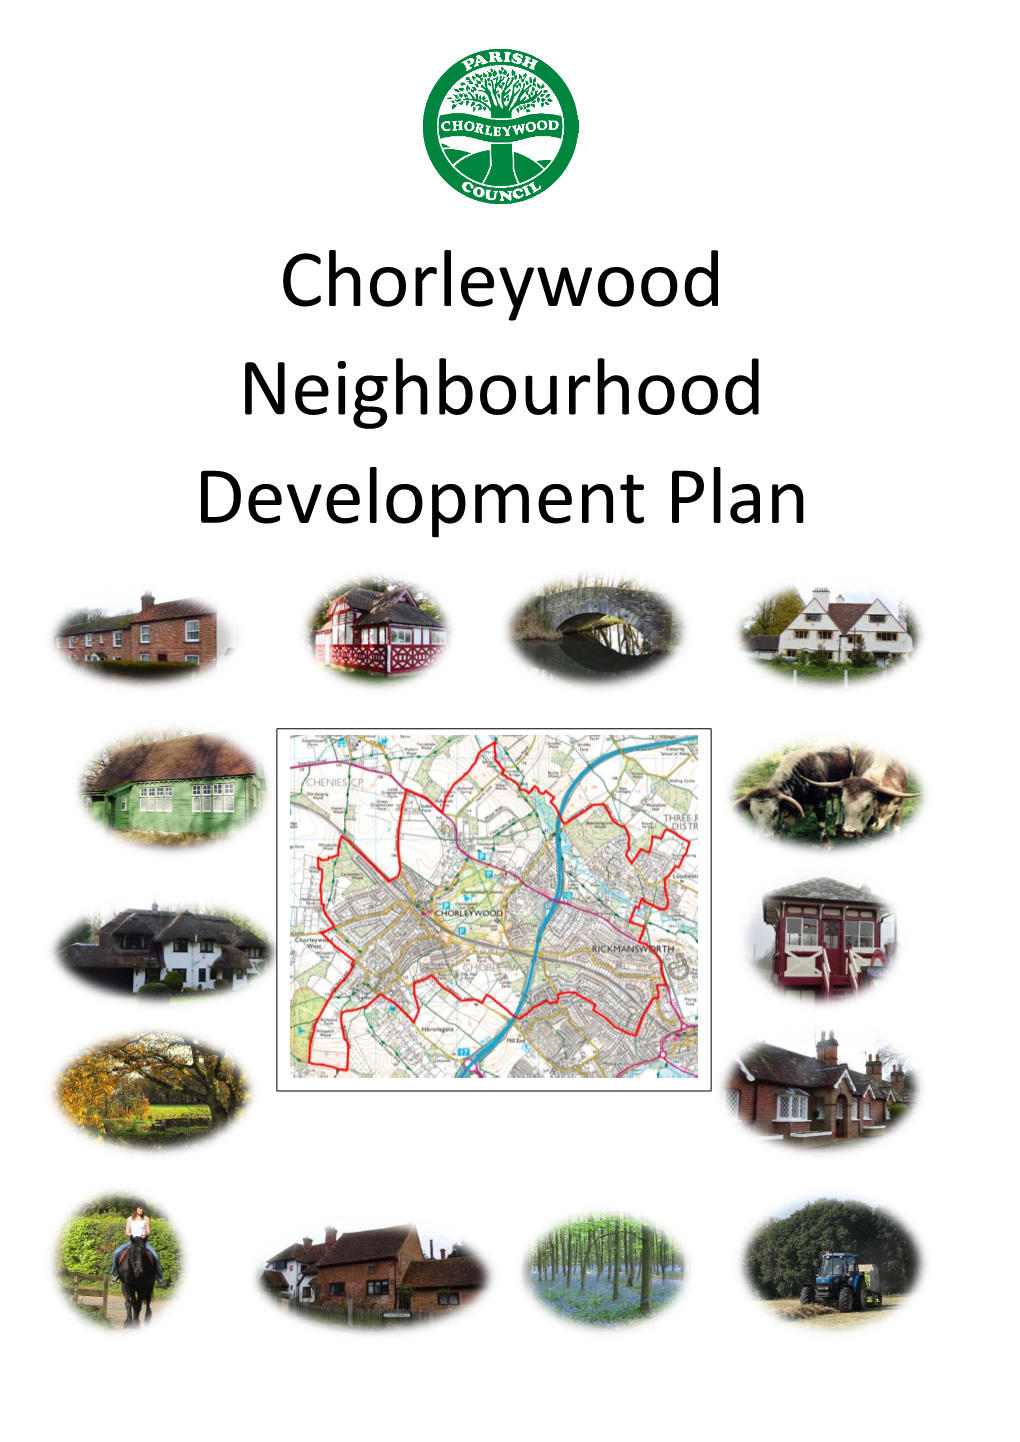 Chorleywood Neighbourhood Development Plan?